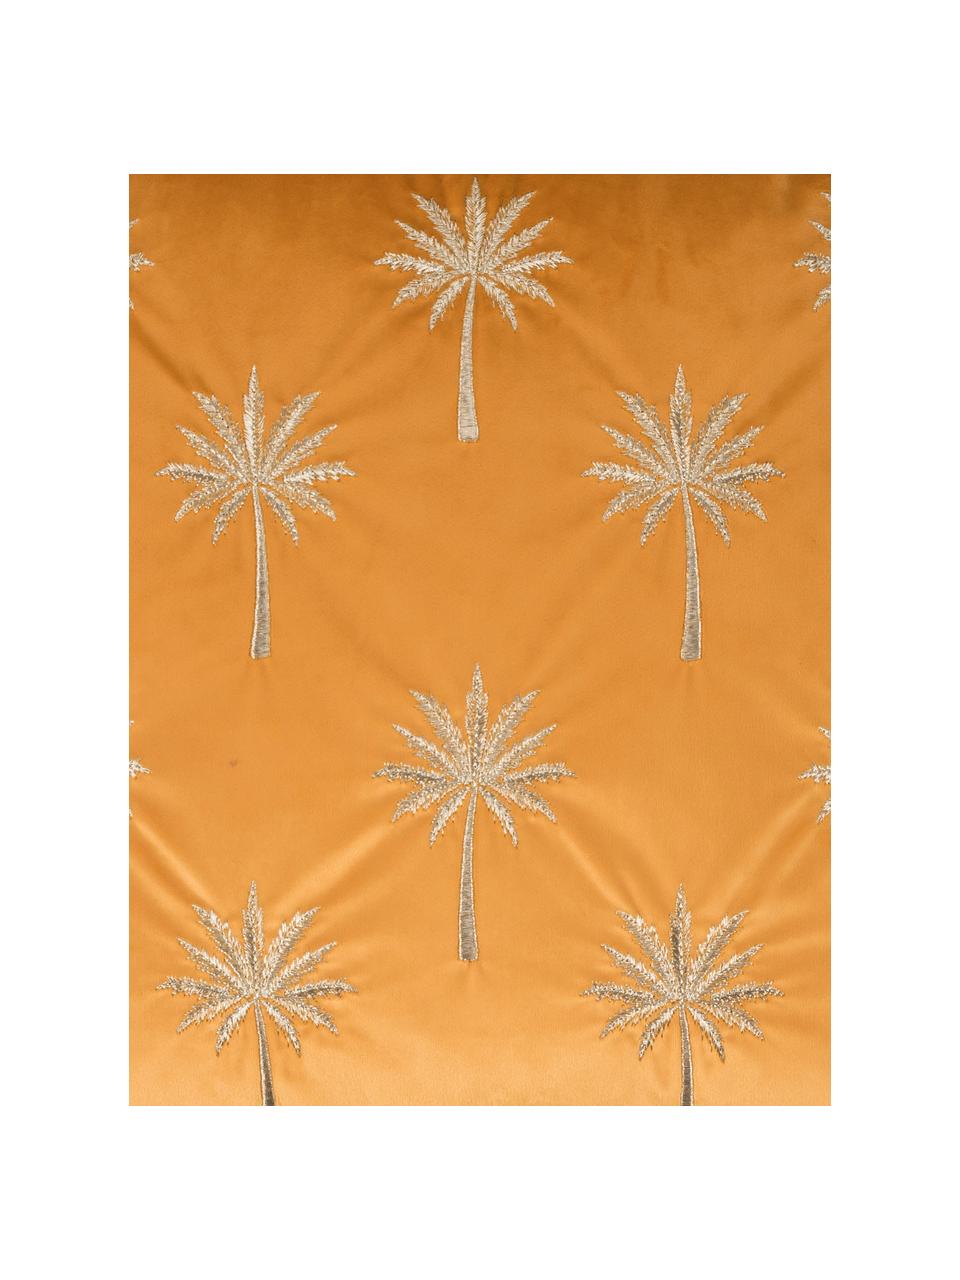 Federa arredo in velluto ricamata Palms, Poliestere, Giallo arancio, dorato, Larg. 45 x Lung. 45 cm